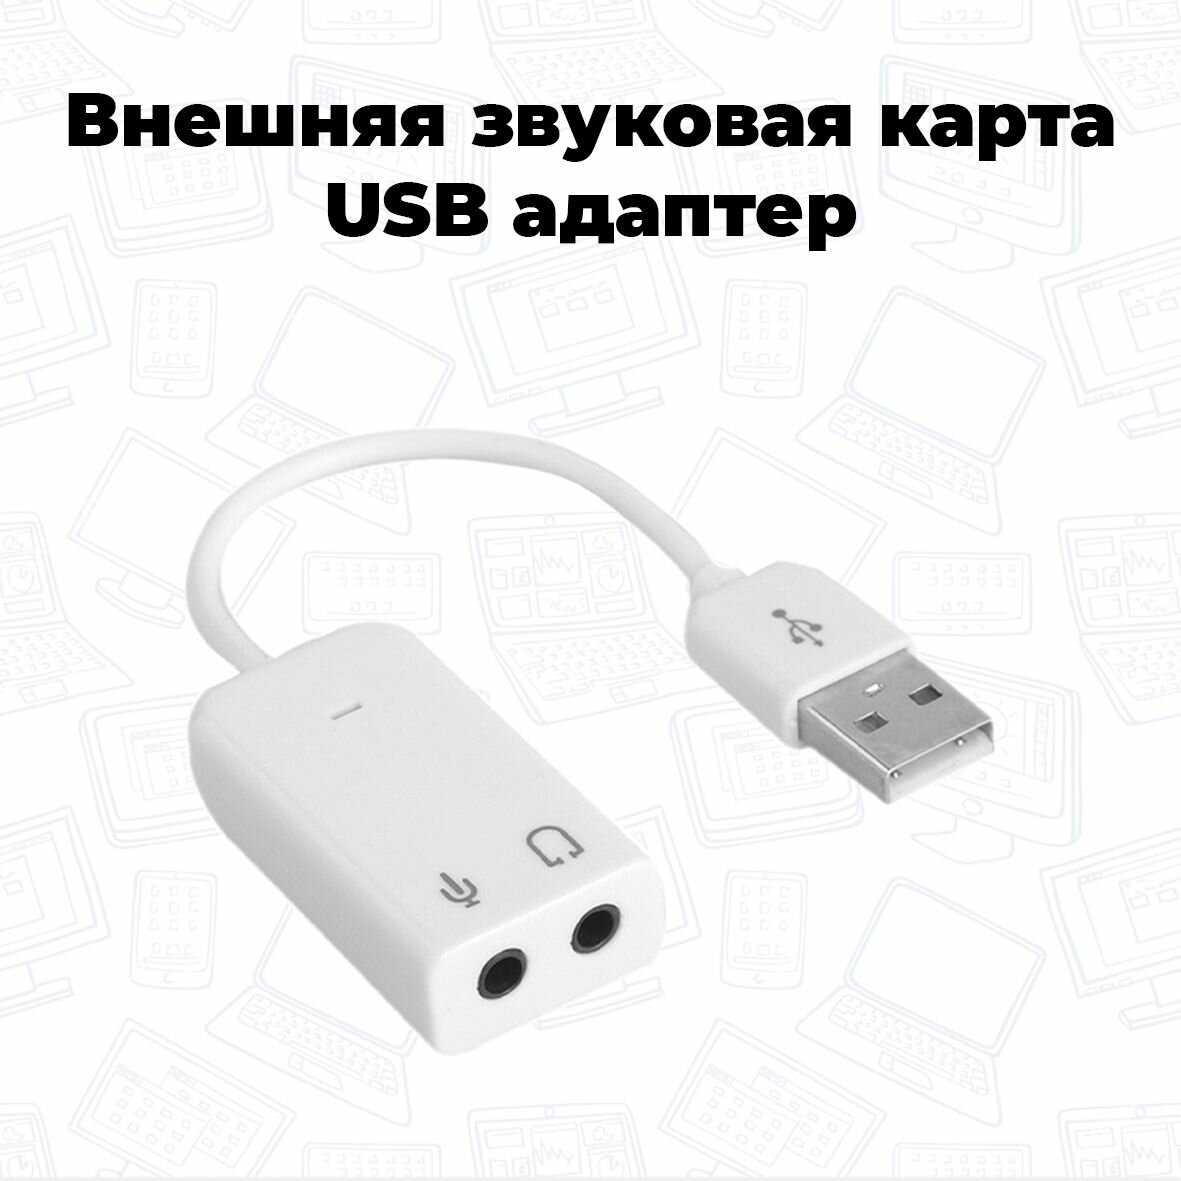 Внешняя USB звуковая карта 71 Audio USB белая